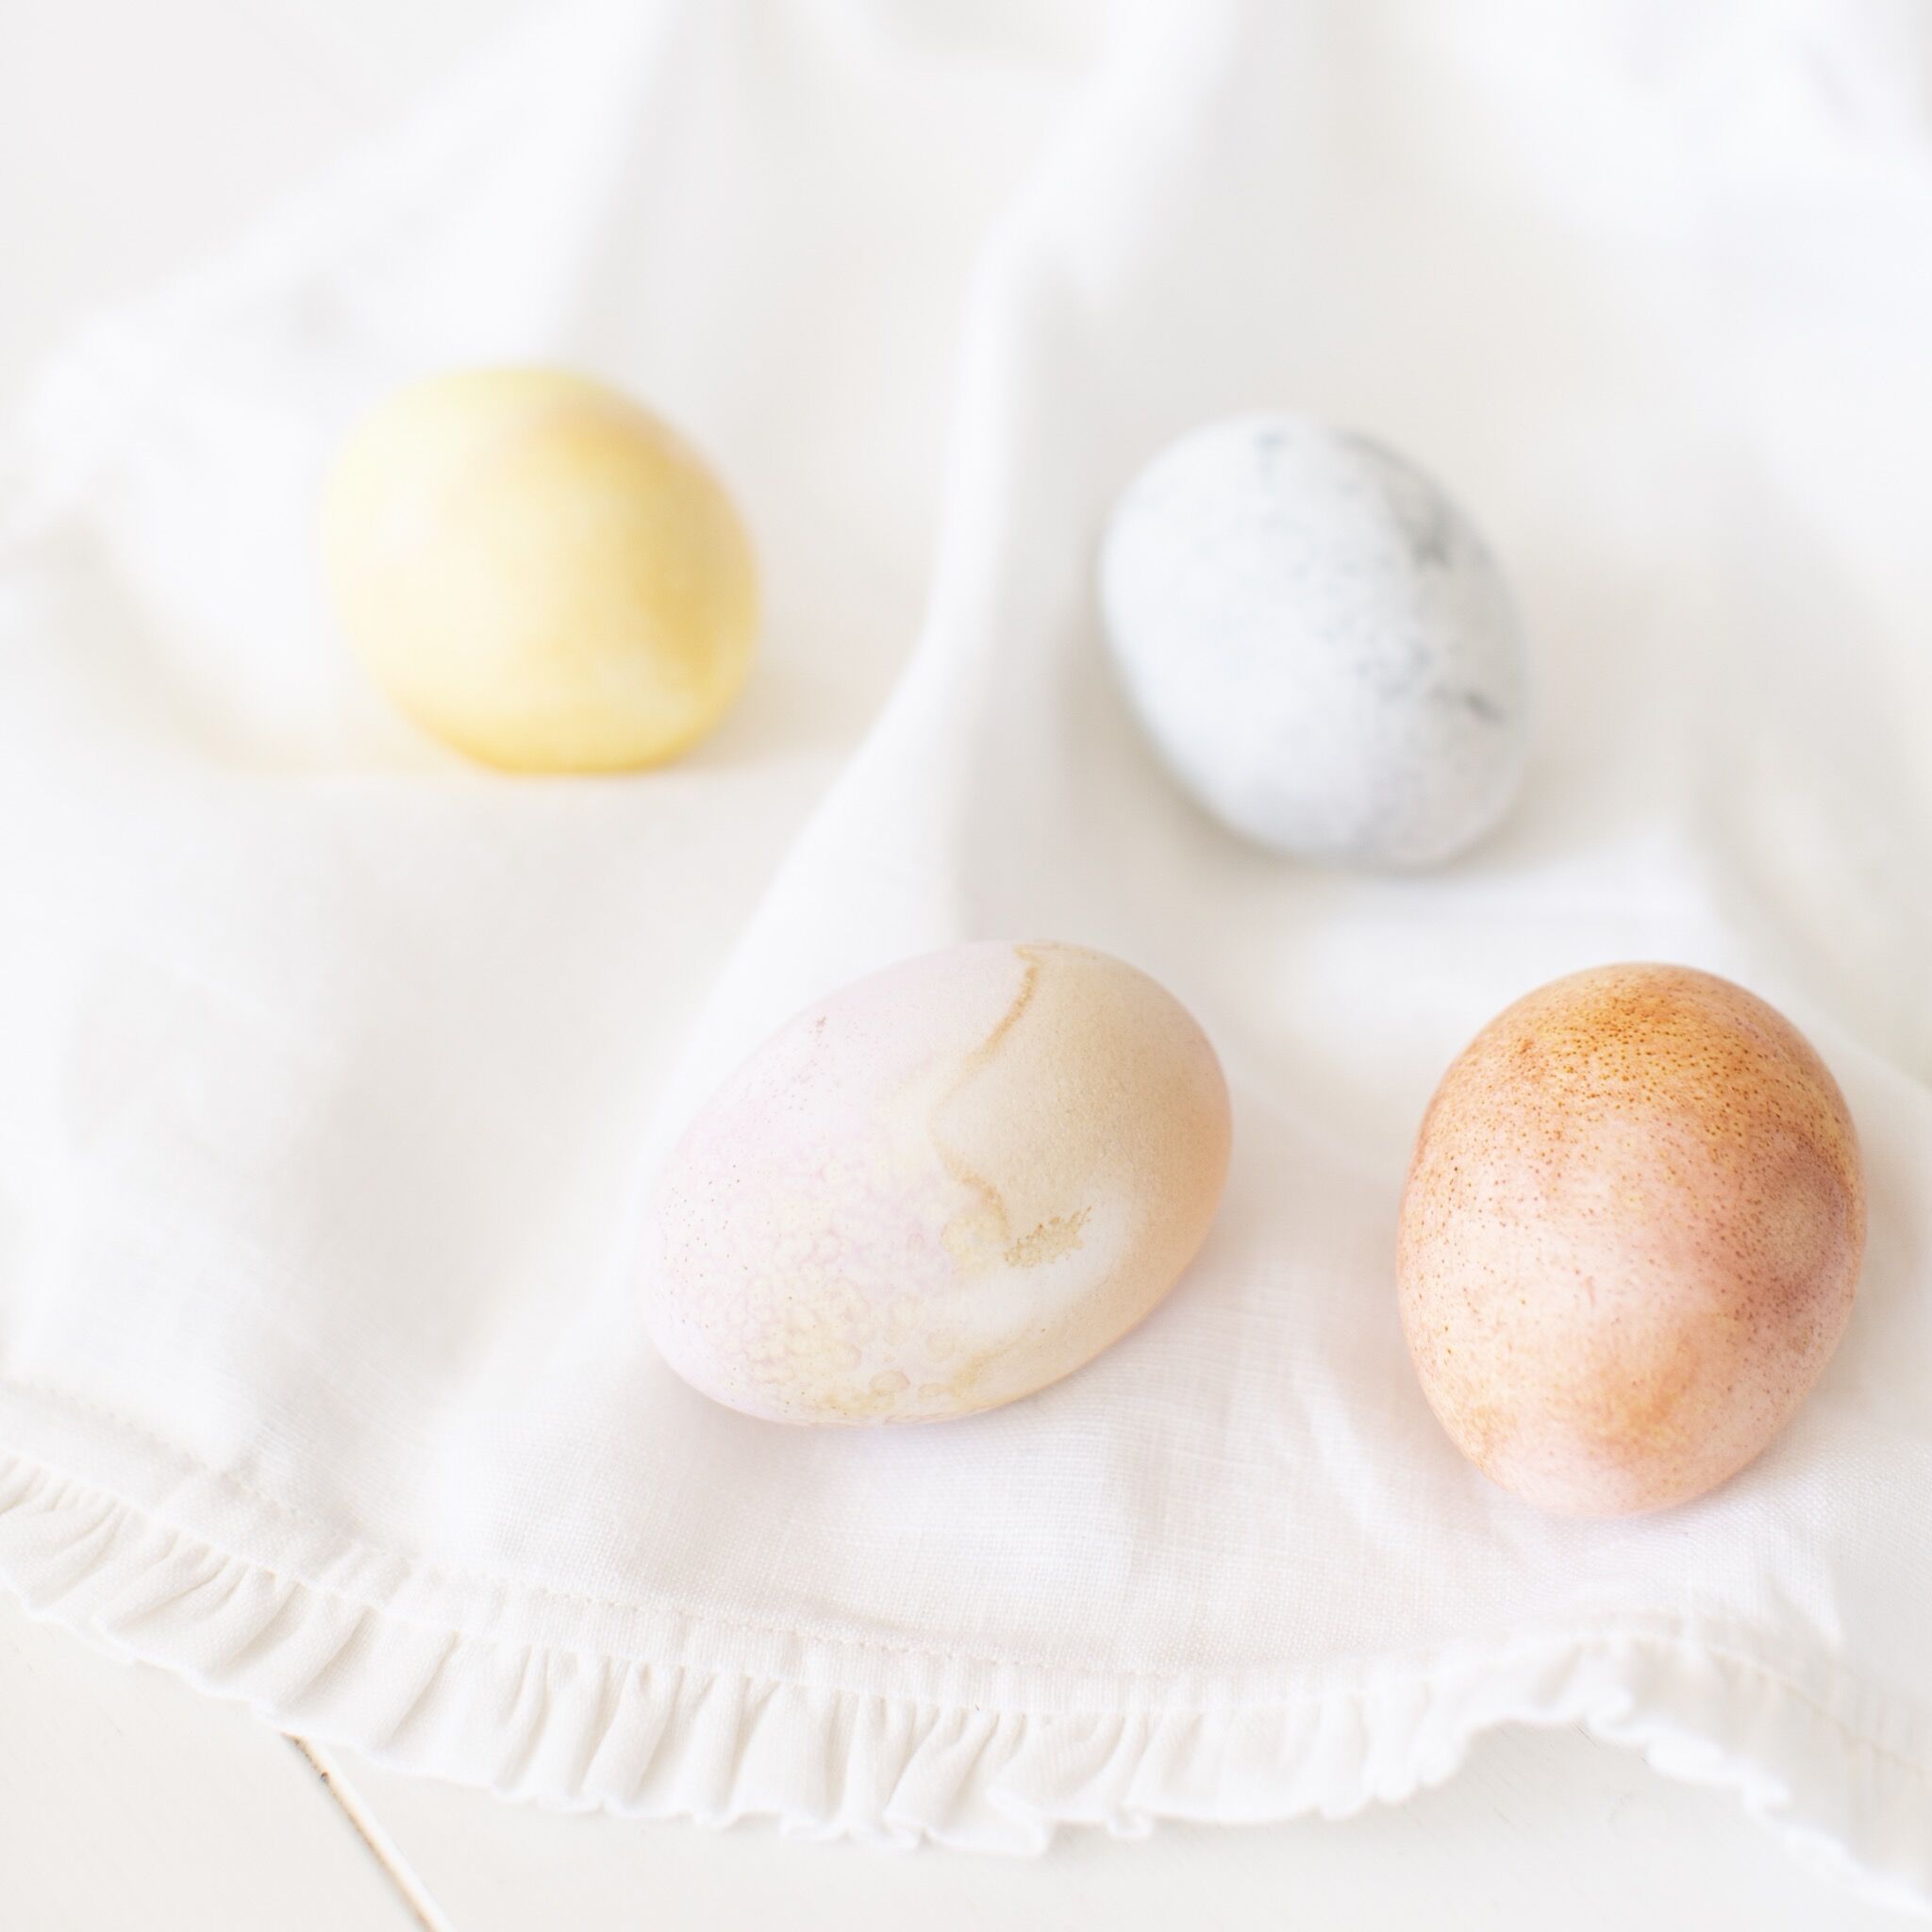 آموزش تخم مرغ های عید پاک با رنگ طبیعی